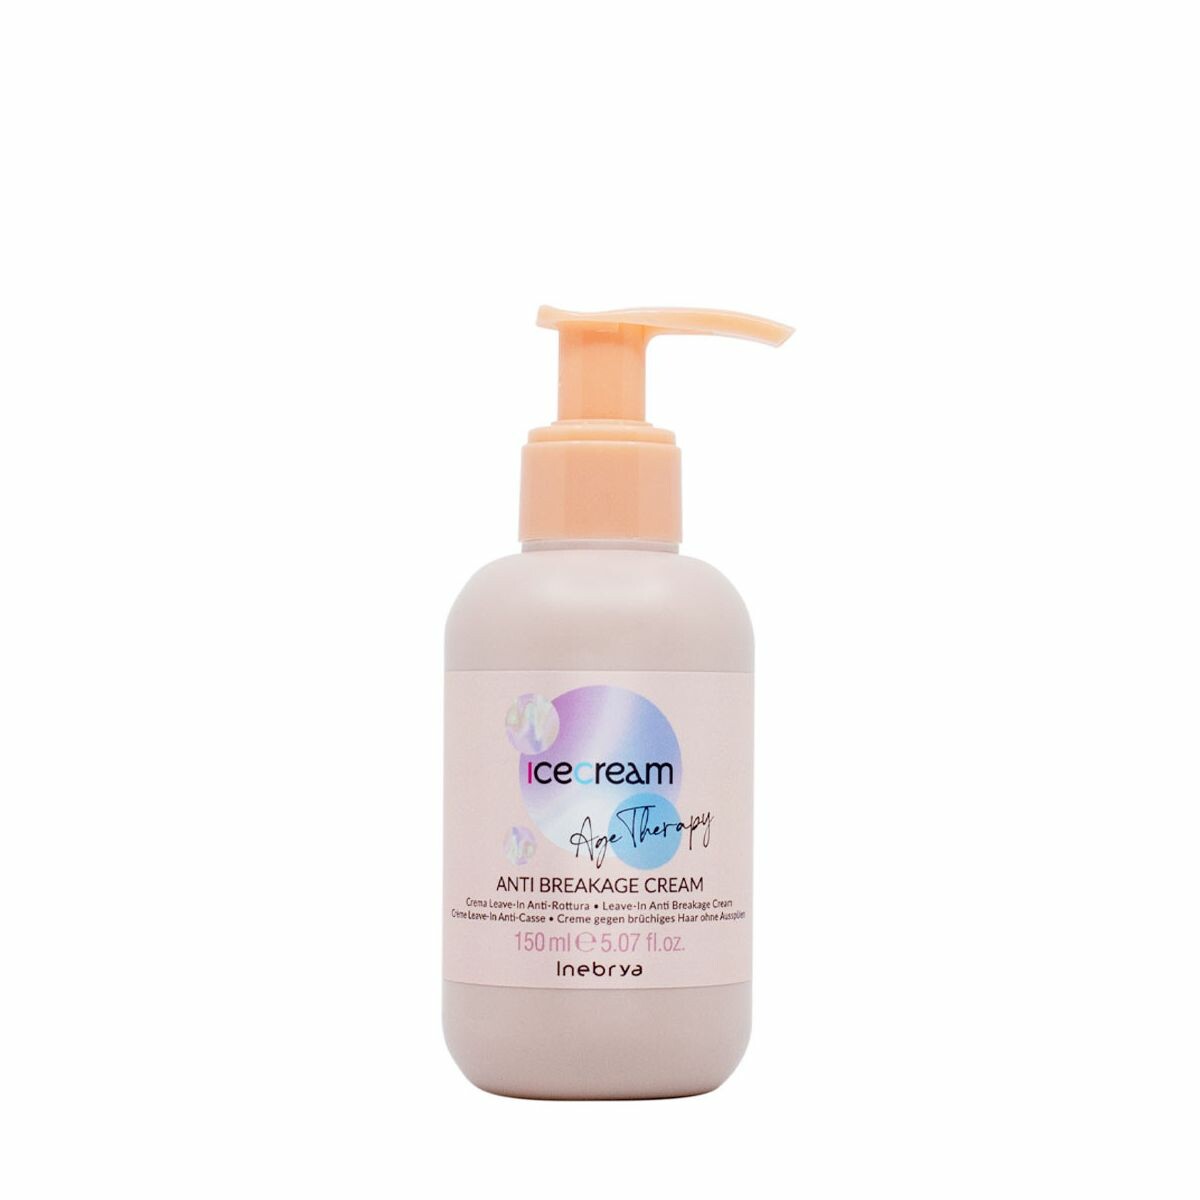 Inebrya Hair Lift Anti Breakage Cream 150ml